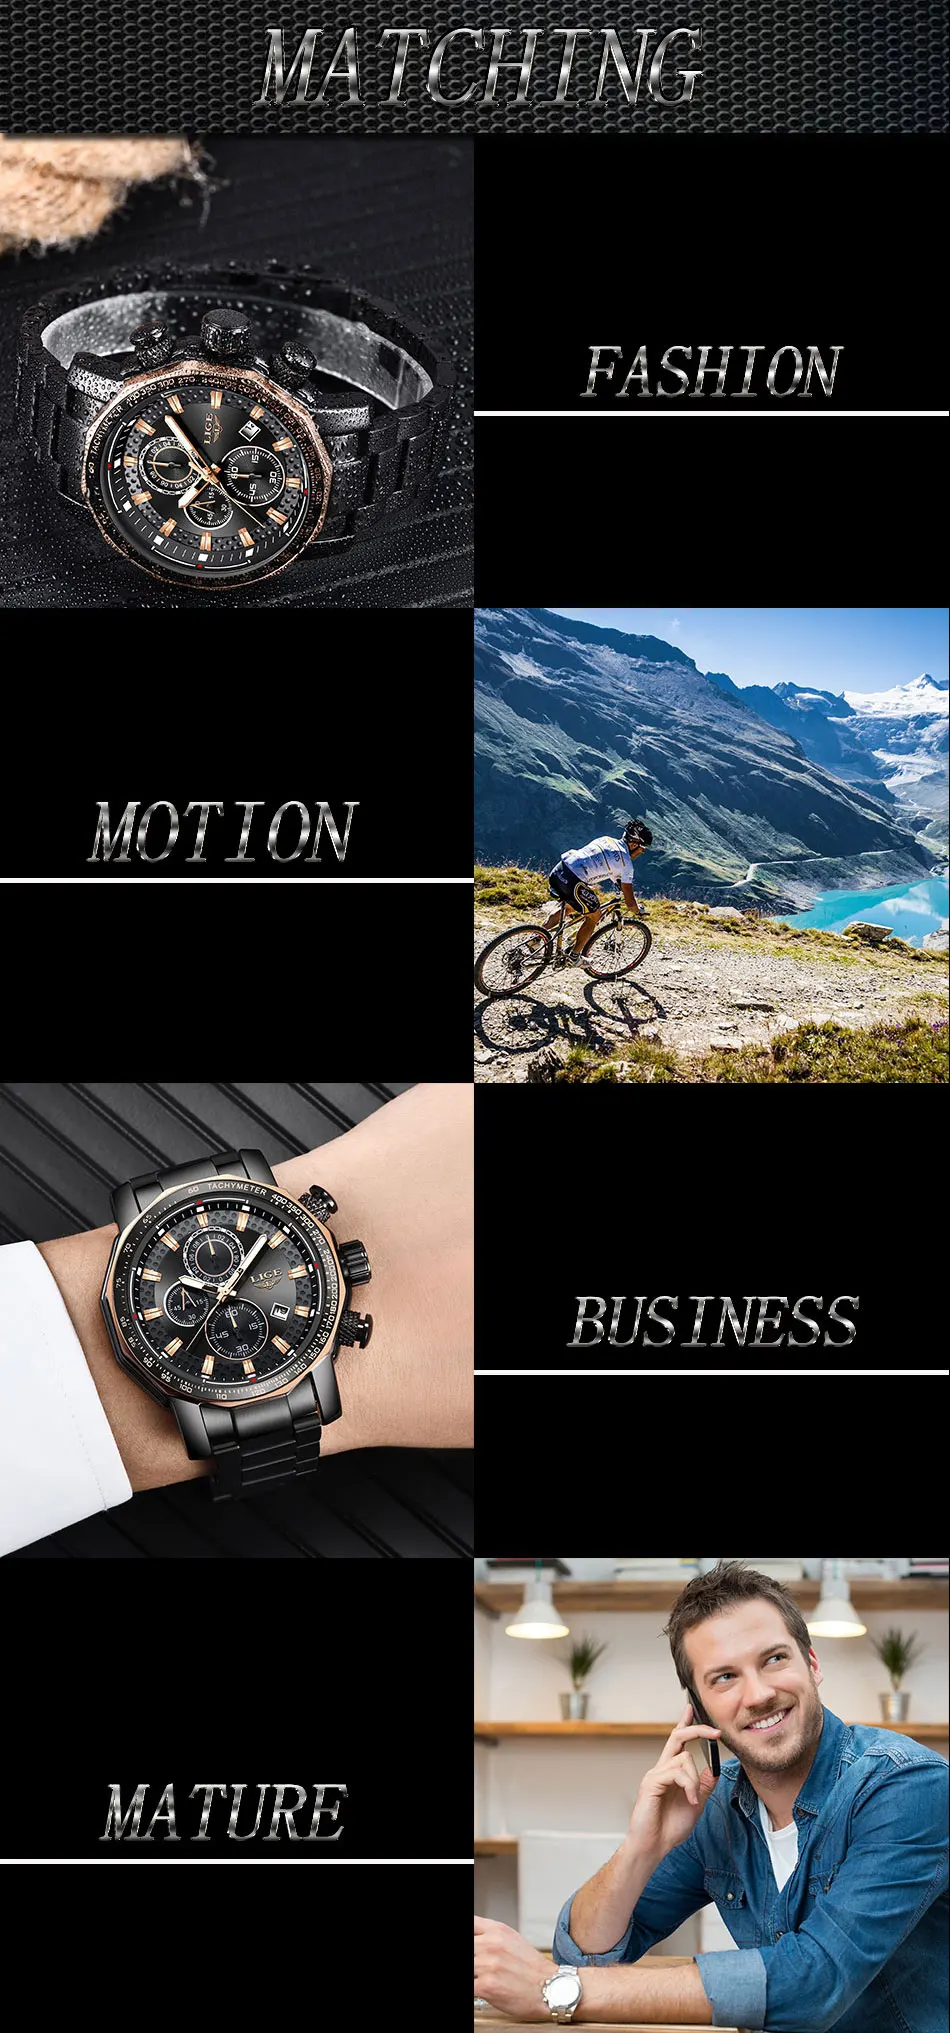 Relogio Masculino LIGE, новинка, спортивные мужские часы с хронографом, Лидирующий бренд, роскошные полностью Стальные кварцевые часы, водонепроницаемые часы с большим циферблатом для мужчин